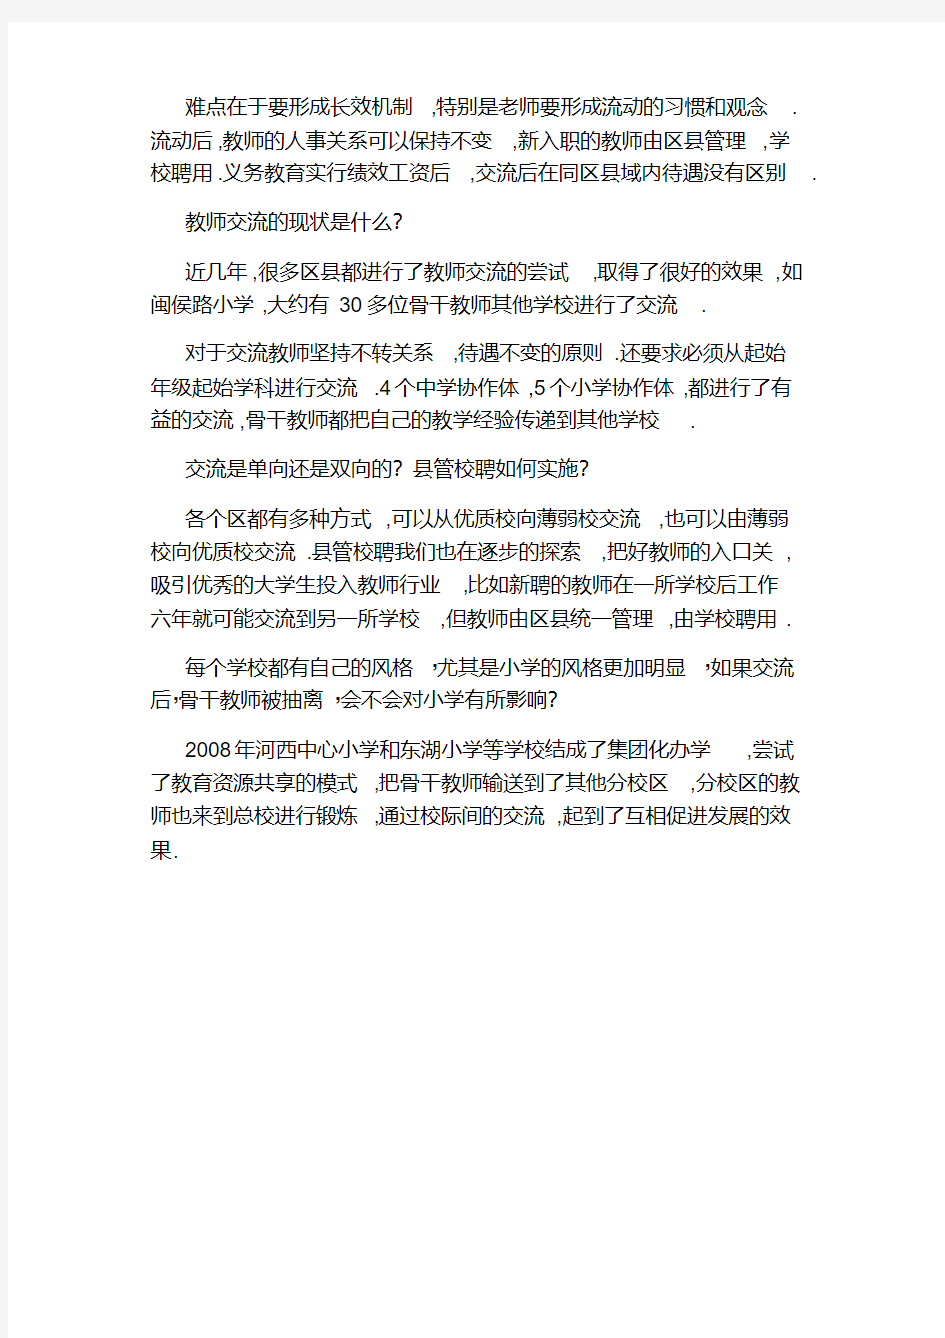 天津中小学教师轮岗方案公布